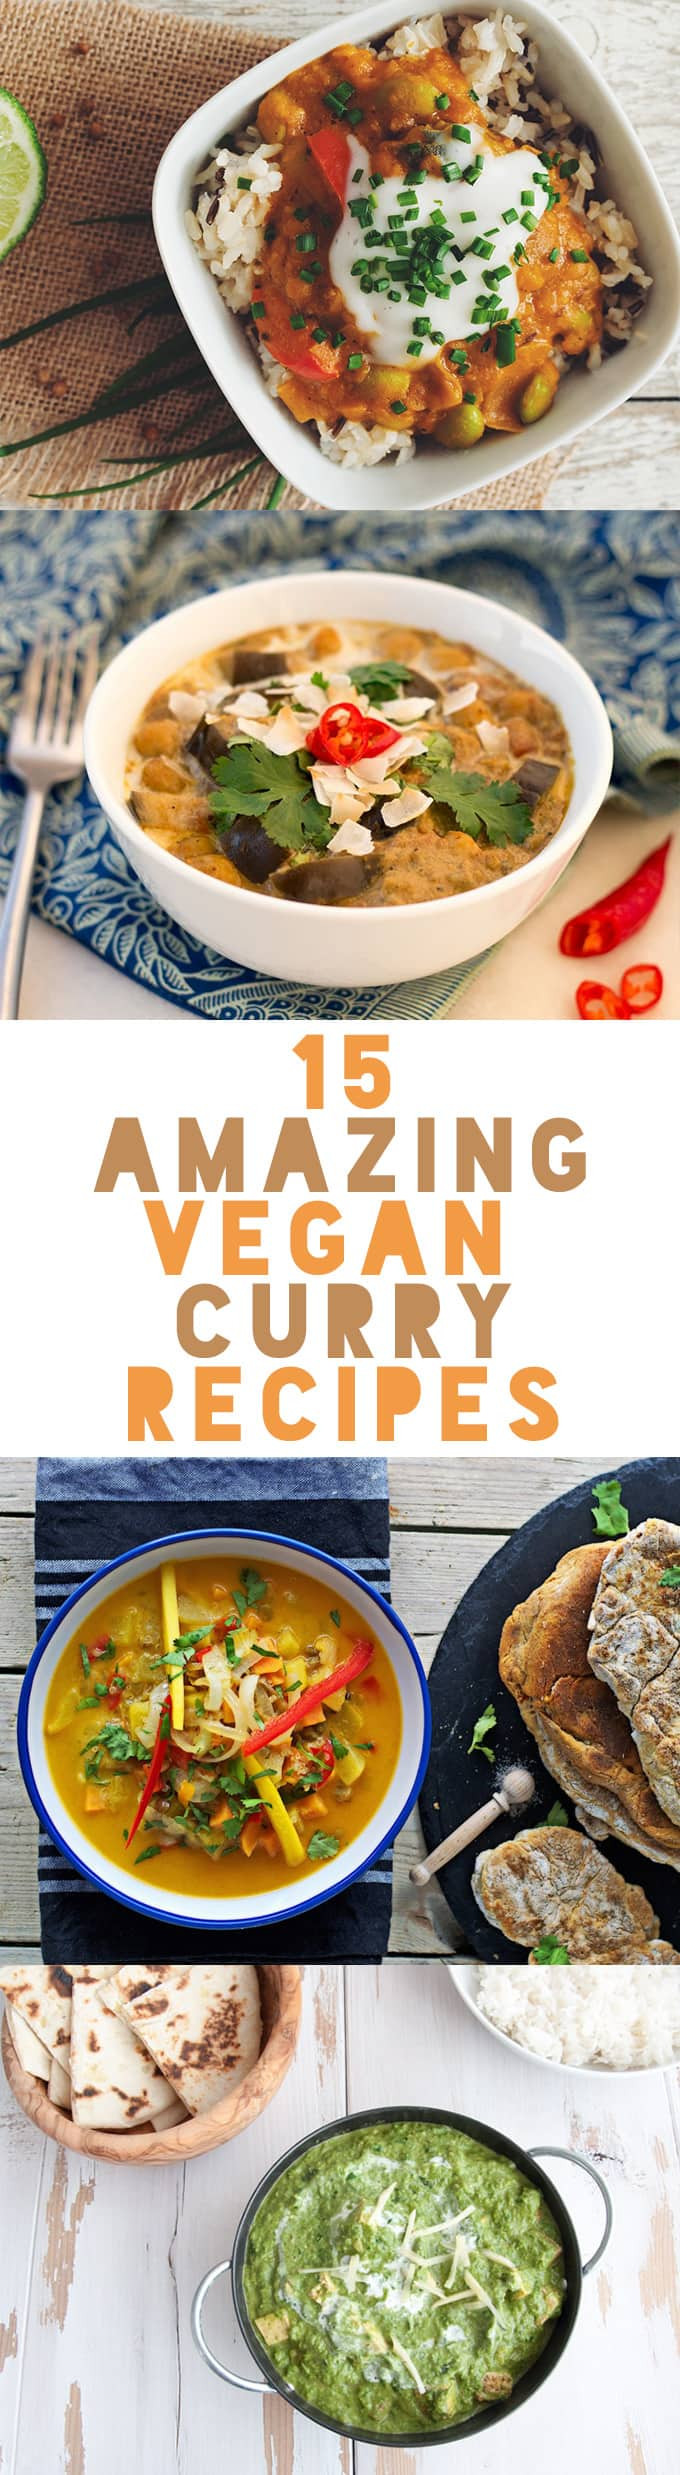 Amazing Vegan Recipes
 15 Amazing Vegan Curry Recipes